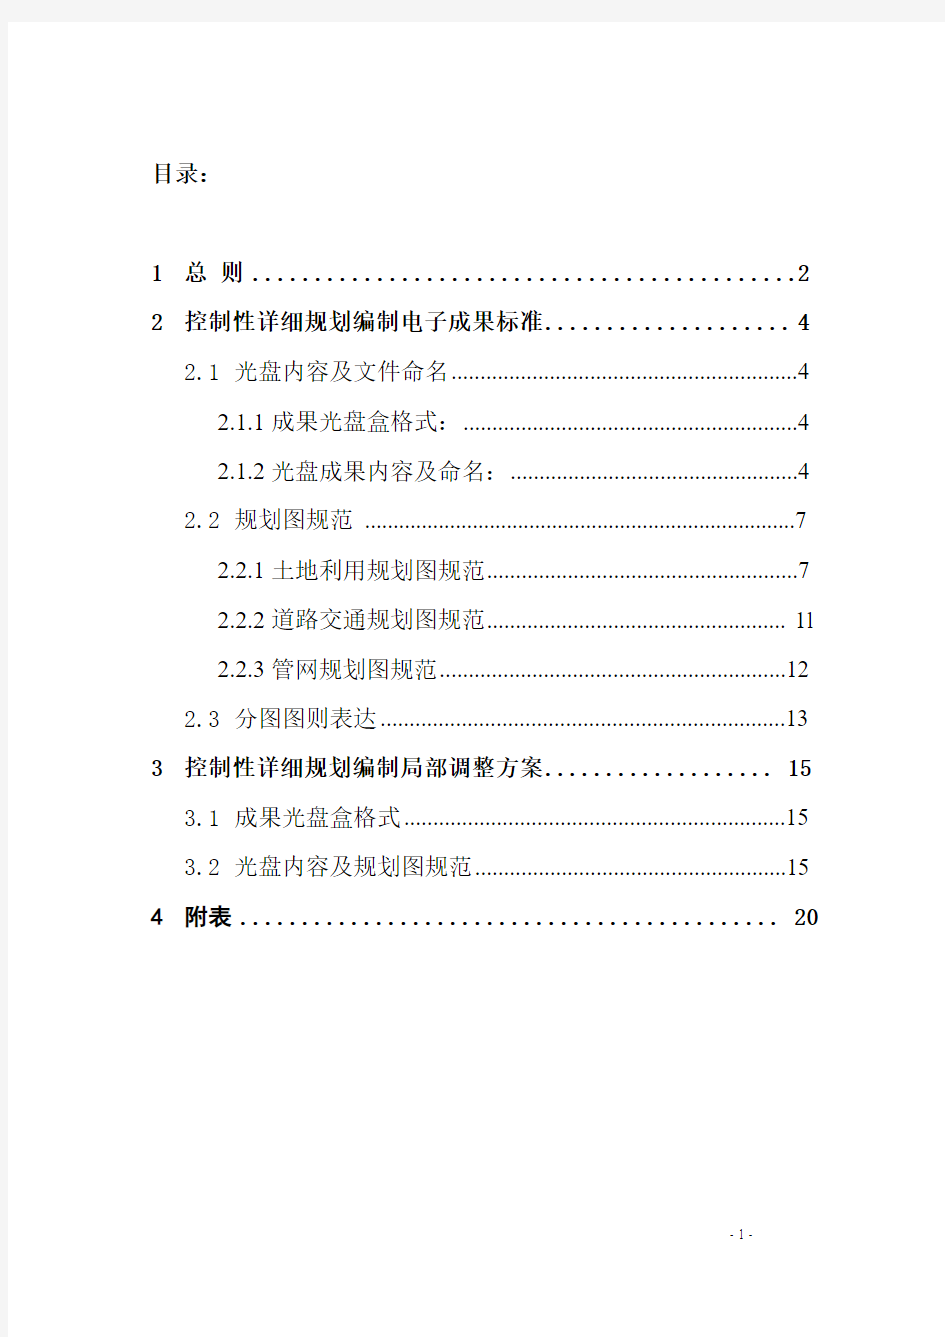 重庆市控制性详细规划编制及局部调整方案电子成果标准